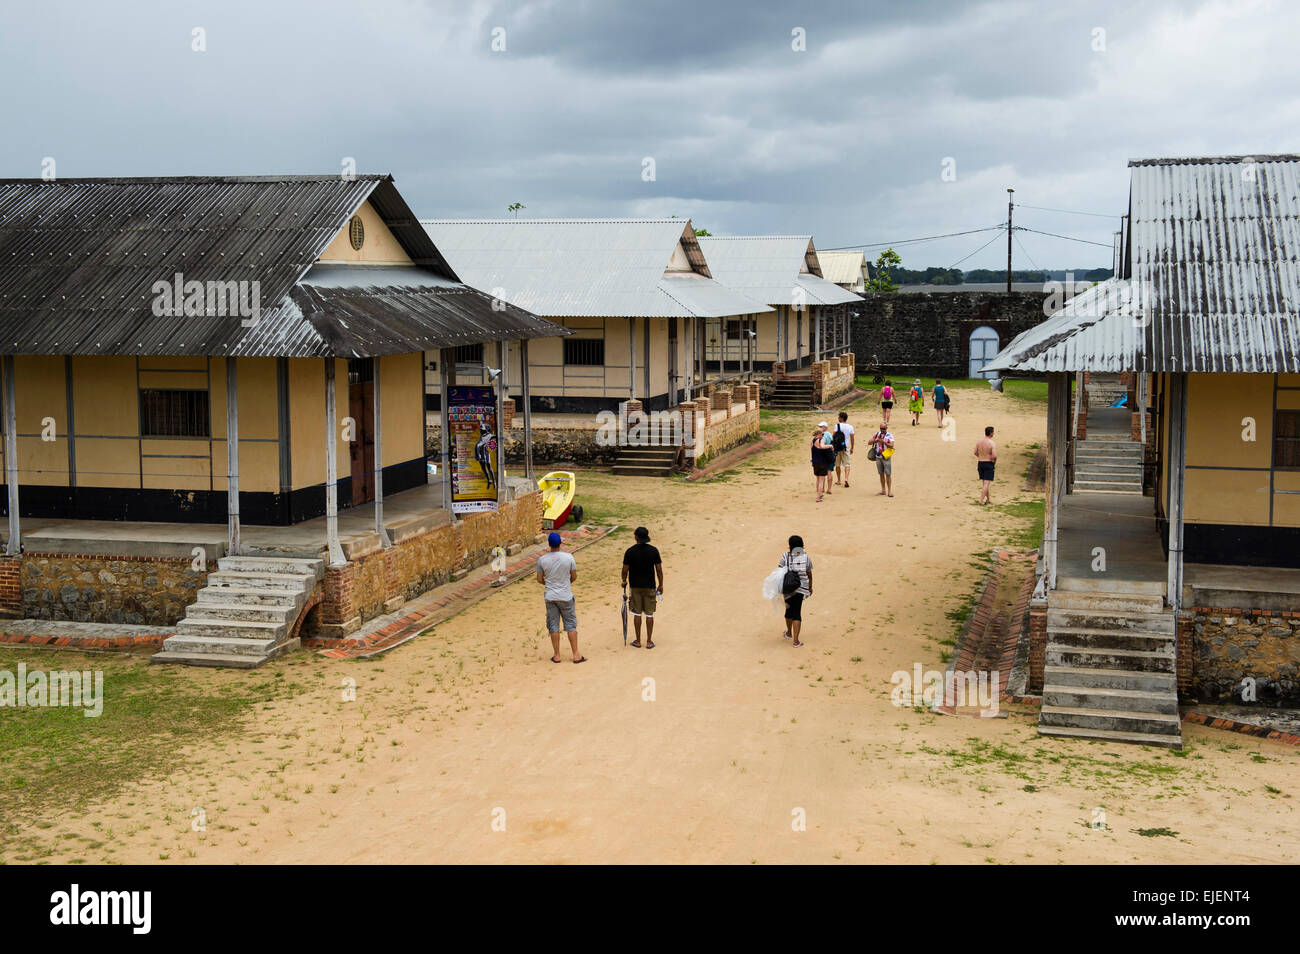 Le Camp de la Transportation, prison famous from the film Papillon, Saint-Laurent-du-Maroni, French Guiana Stock Photo